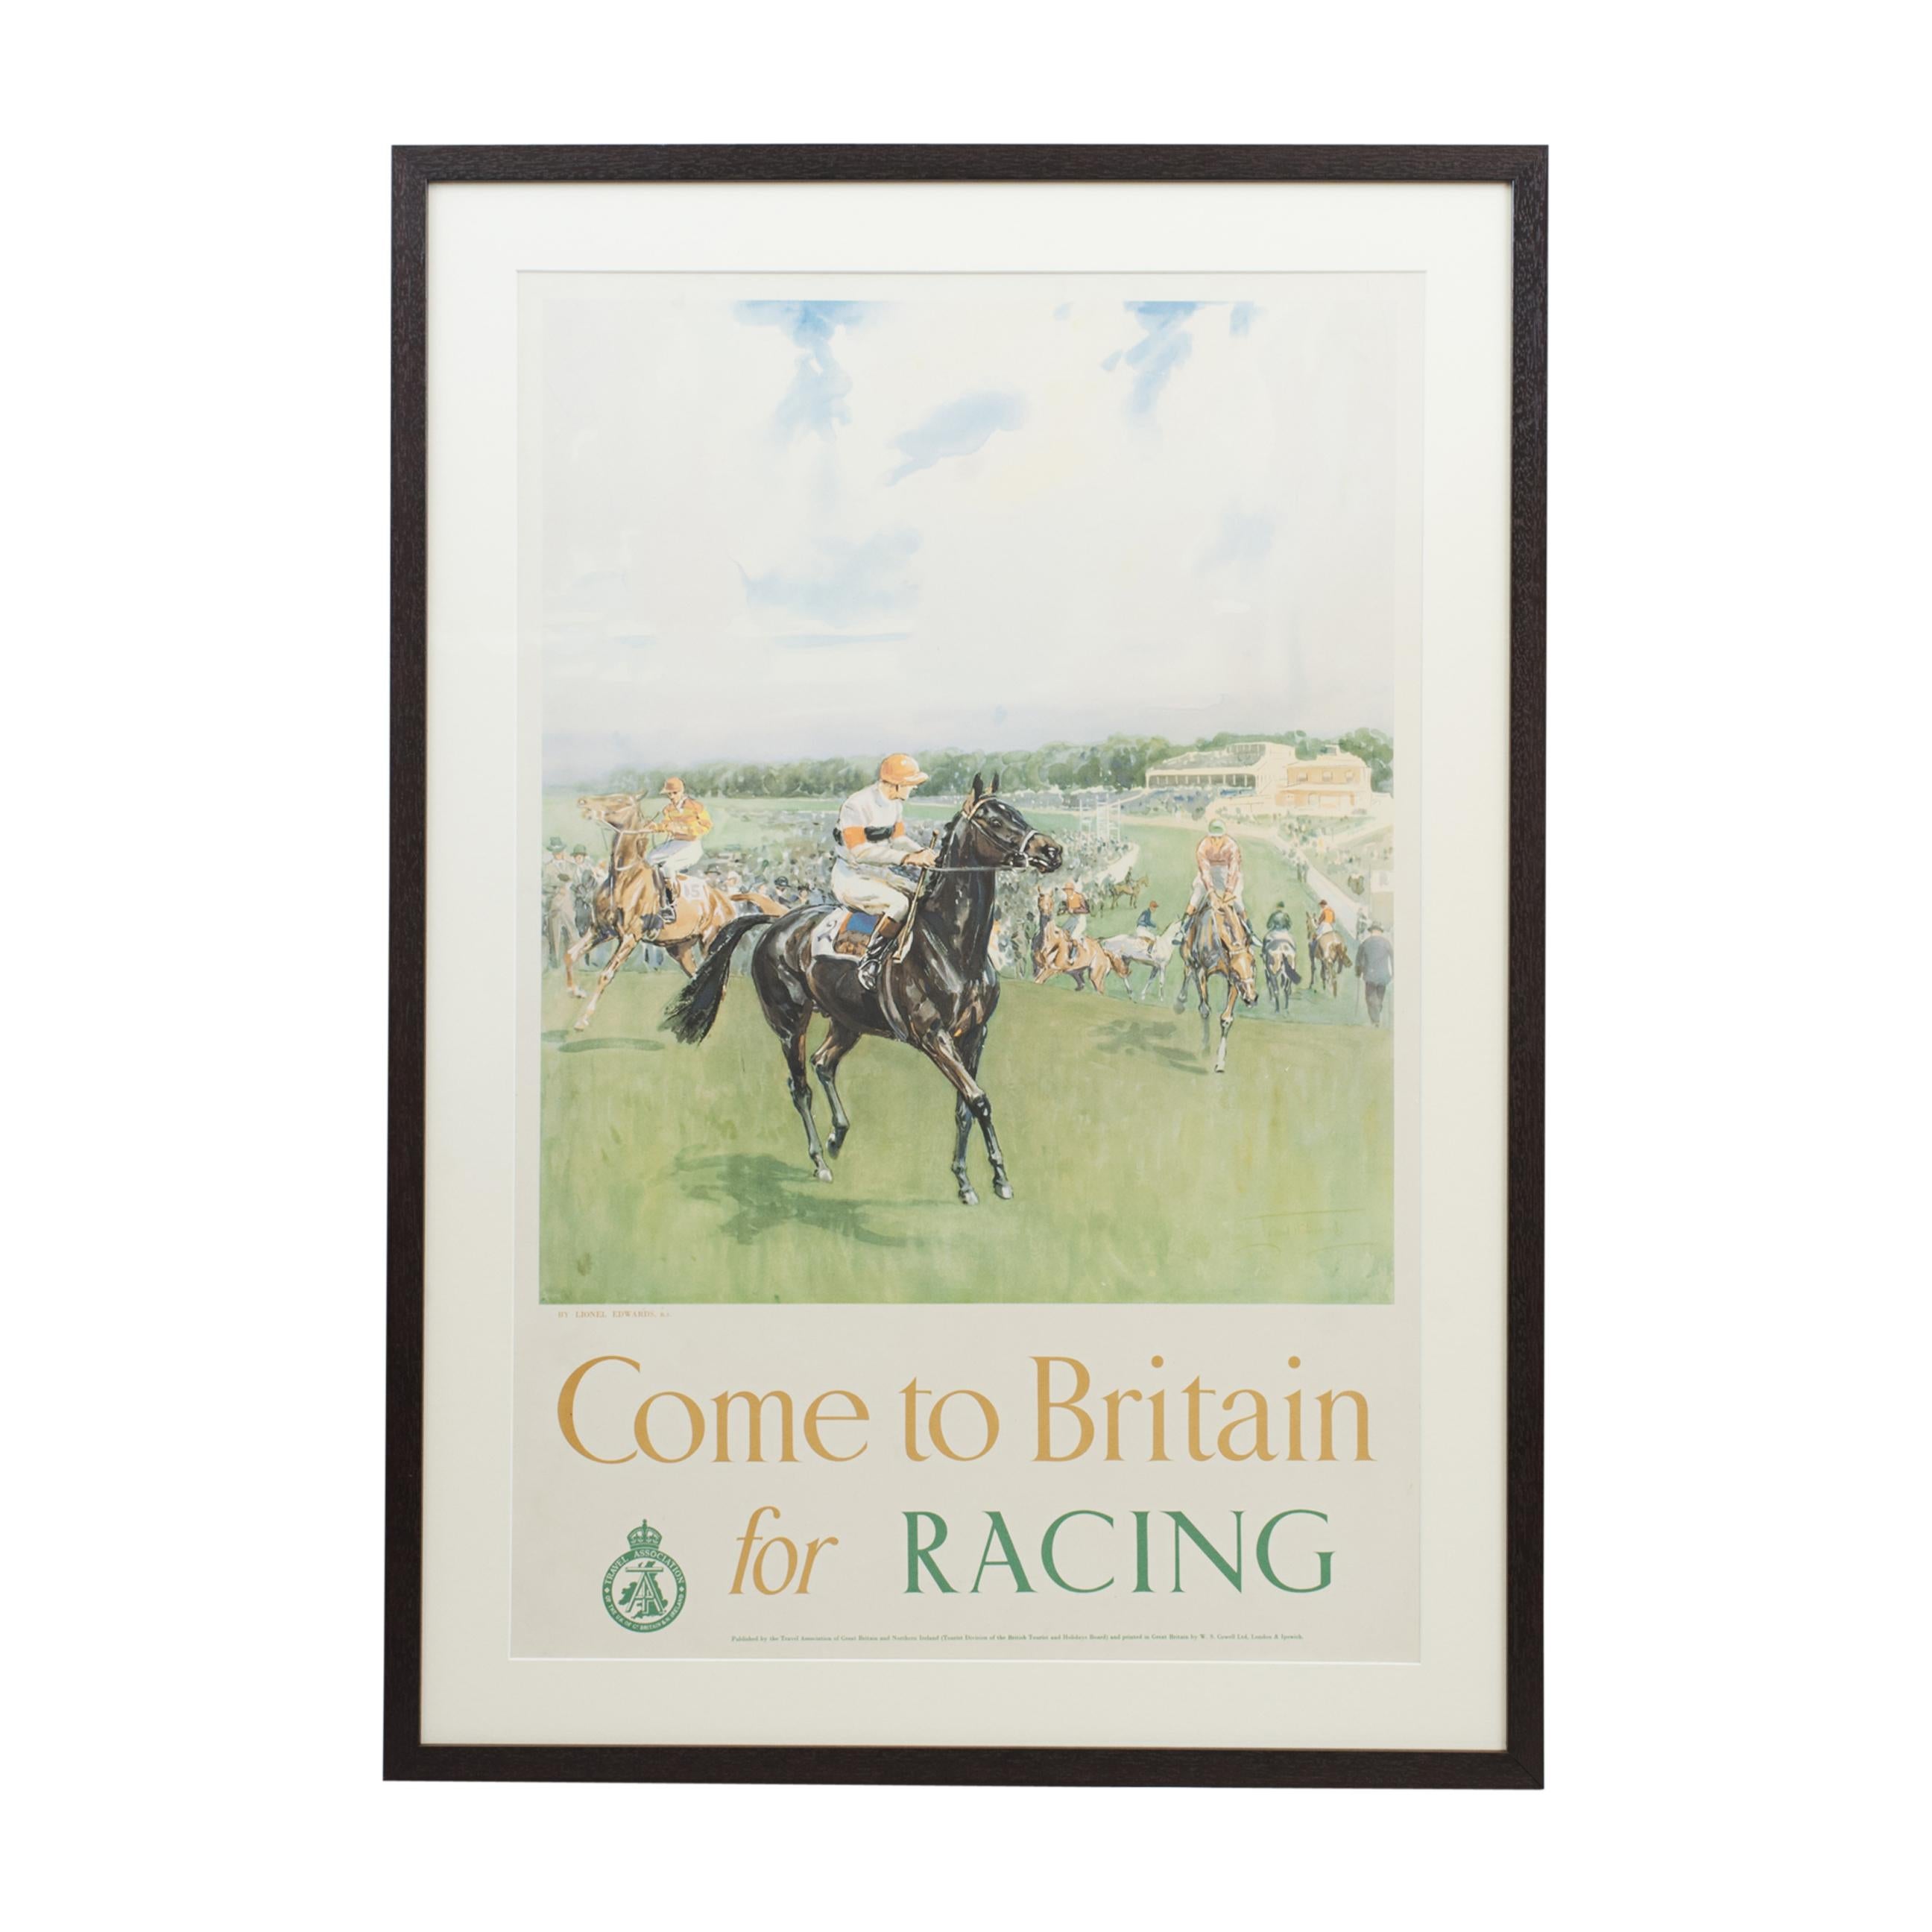 Affiche de voyage originale venue en Grande-Bretagne pour la course automobile par Lionel Edwards.
Une superbe affiche de Lionel Edwards sur les courses de chevaux intitulée 